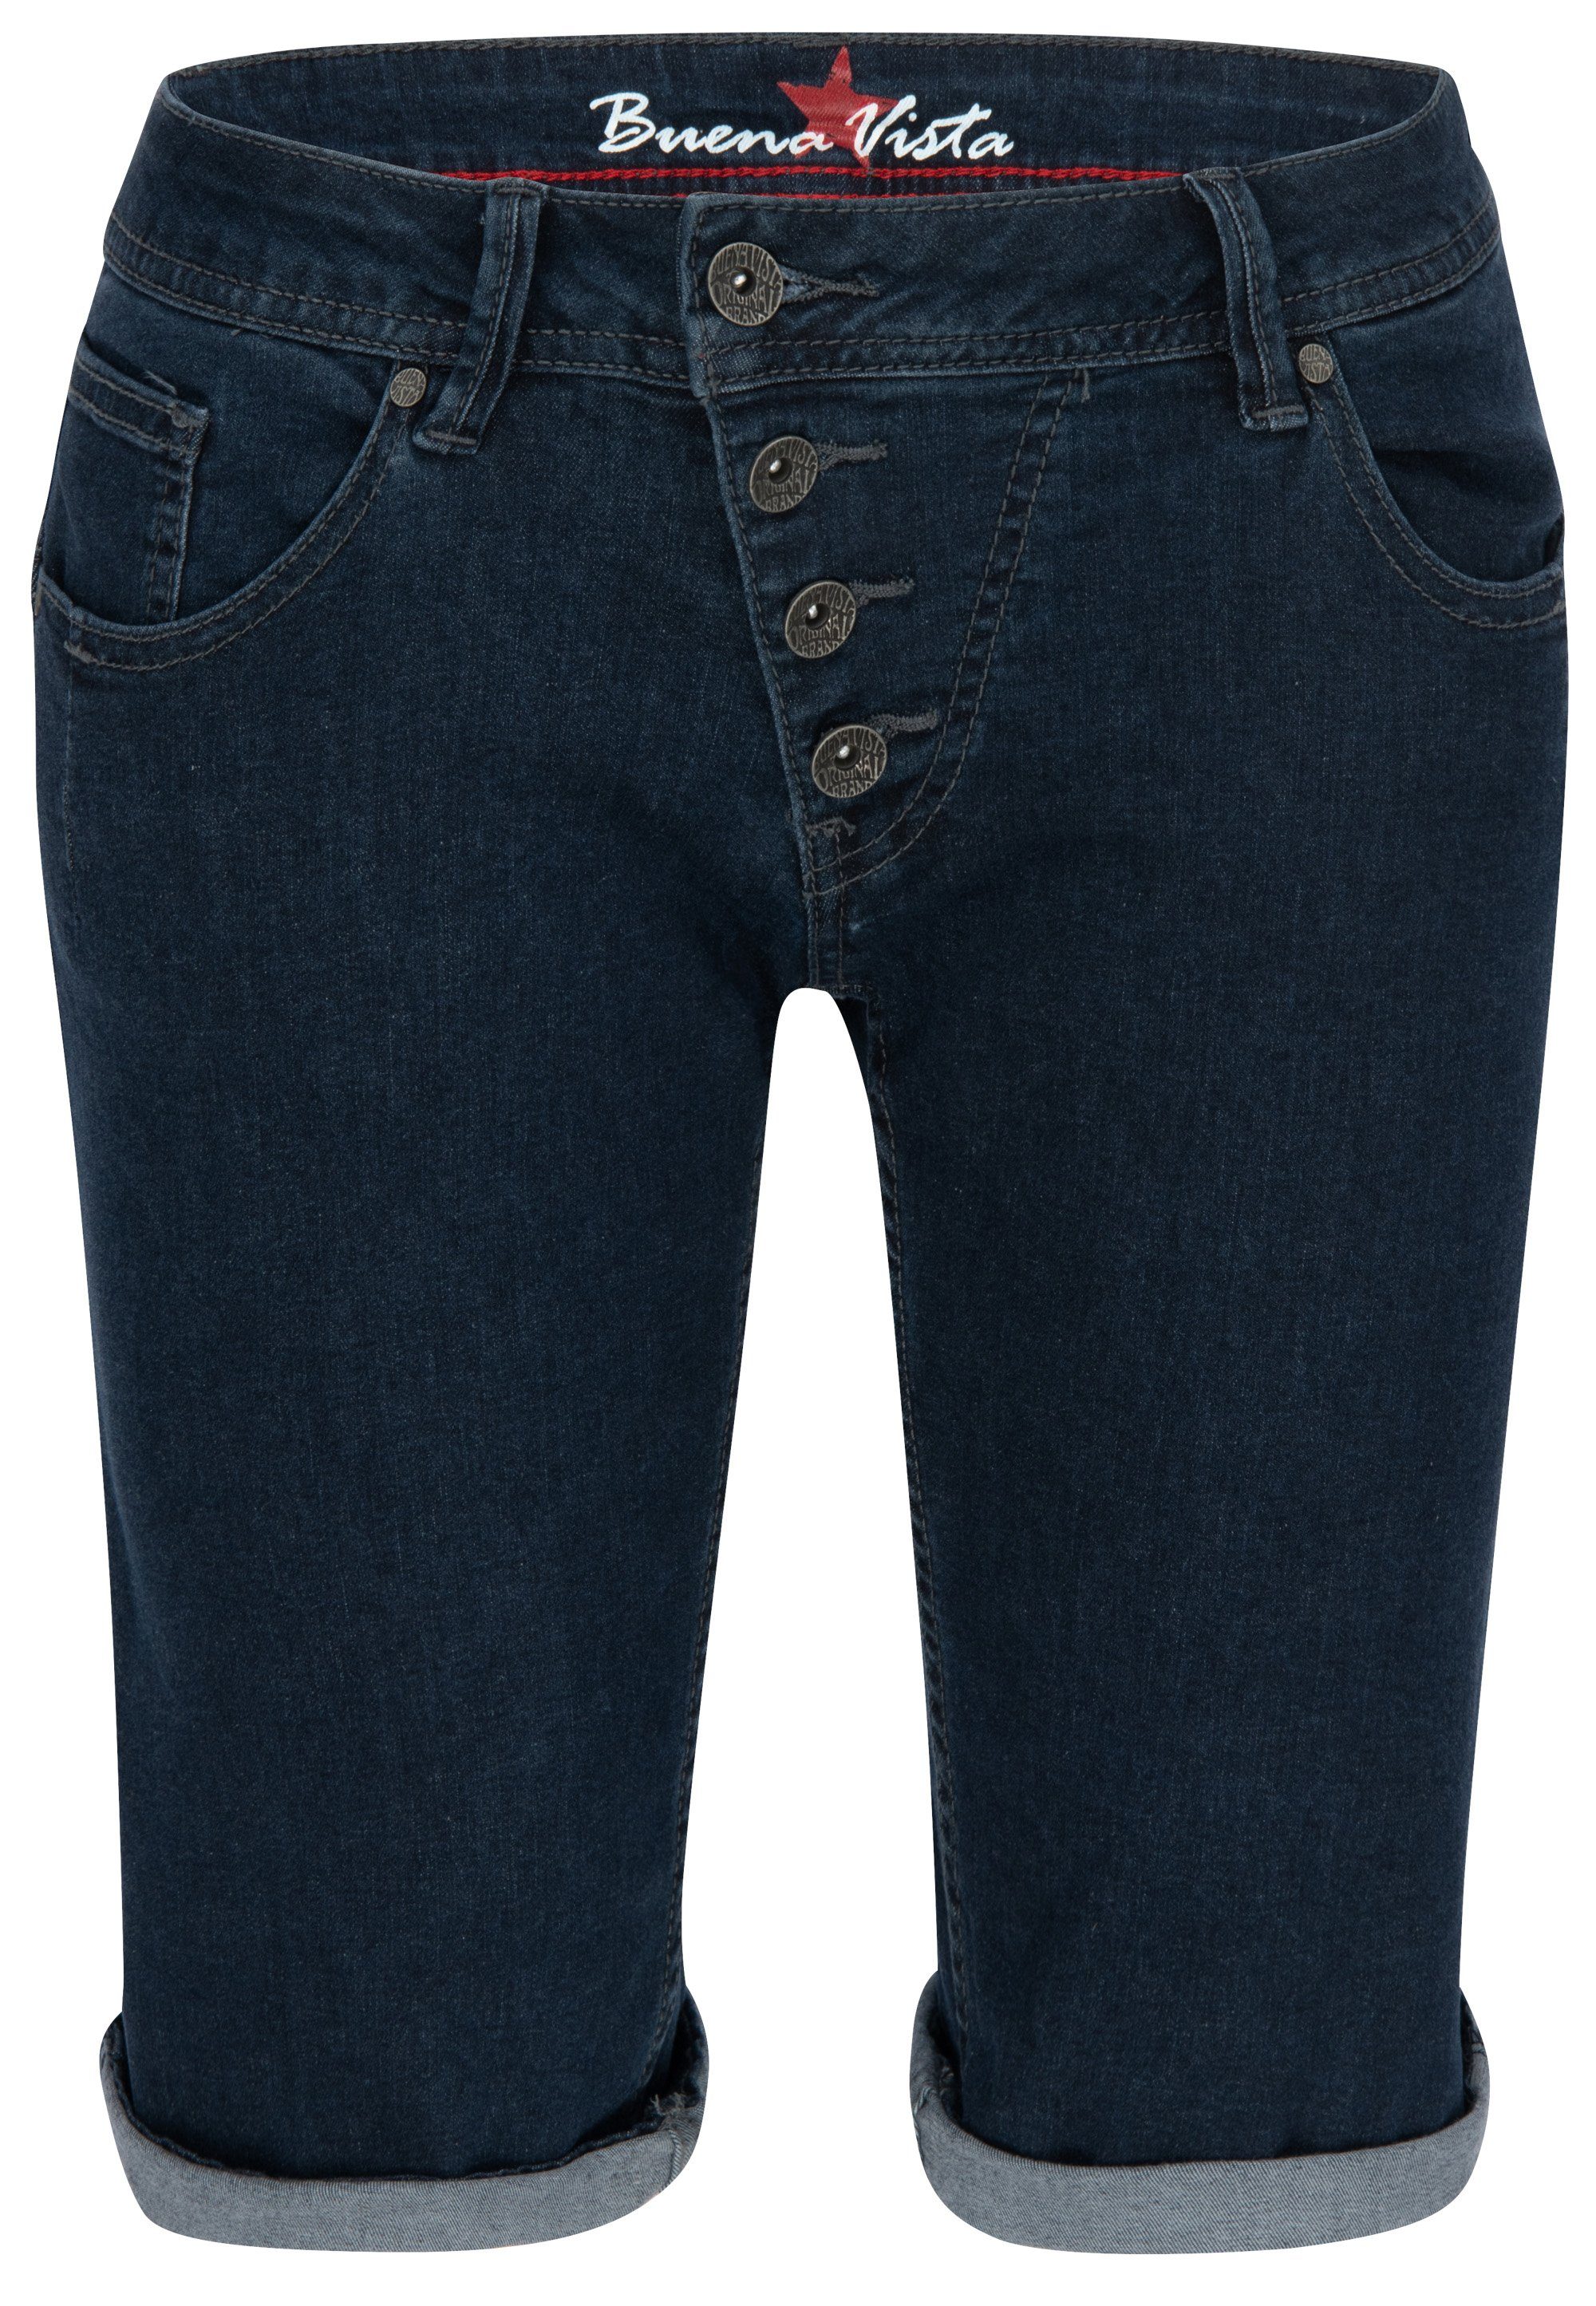 Stretch Stretch-Jeans Denim VISTA SHORT J5025 BUENA MALIBU Vista raw 212.1933 - blue Buena 2104